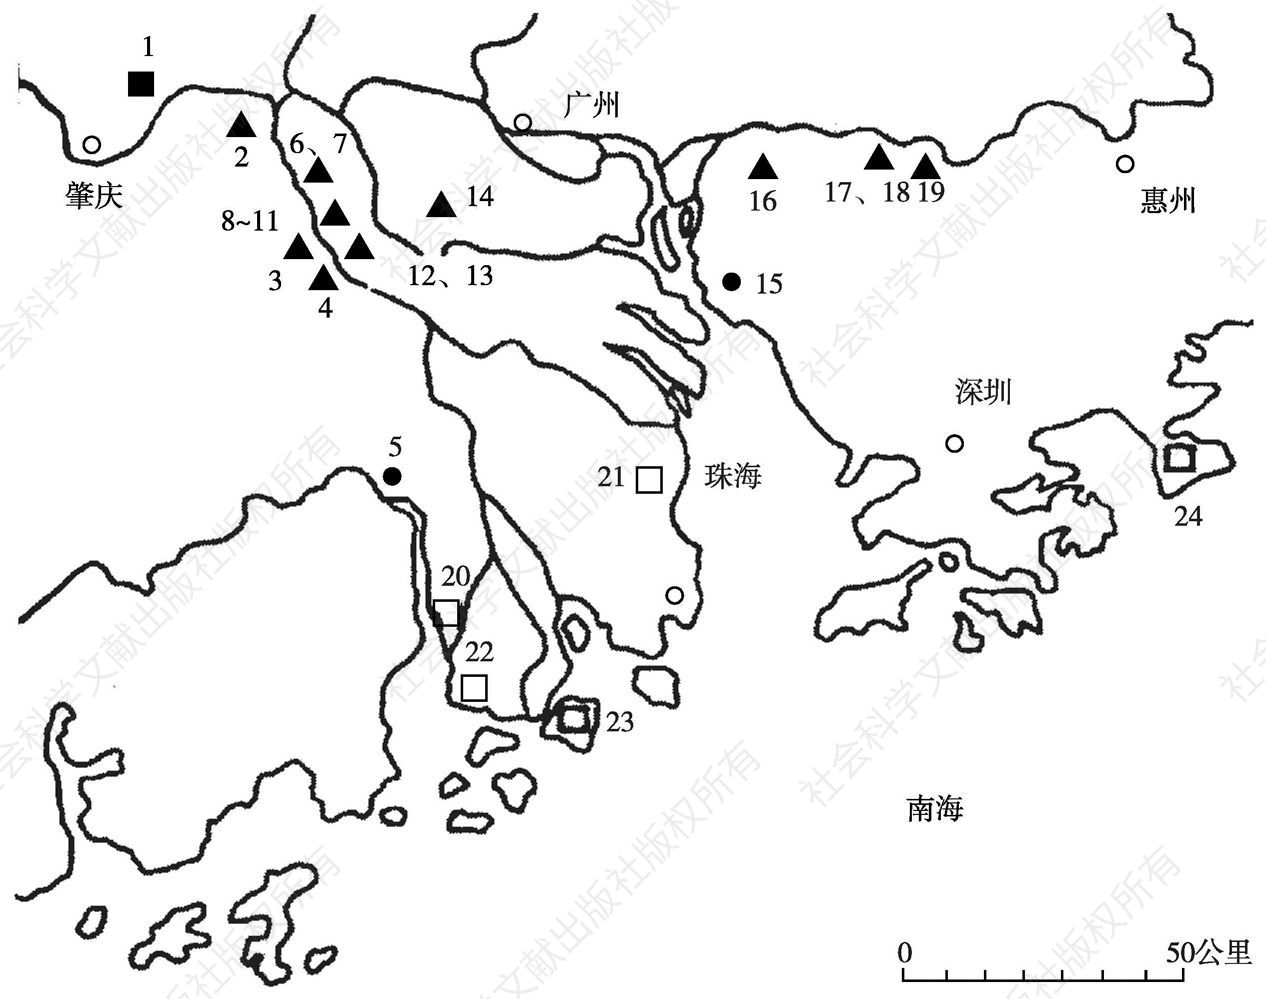 图1 珠江三角洲地区史前地理环境及遗址分布